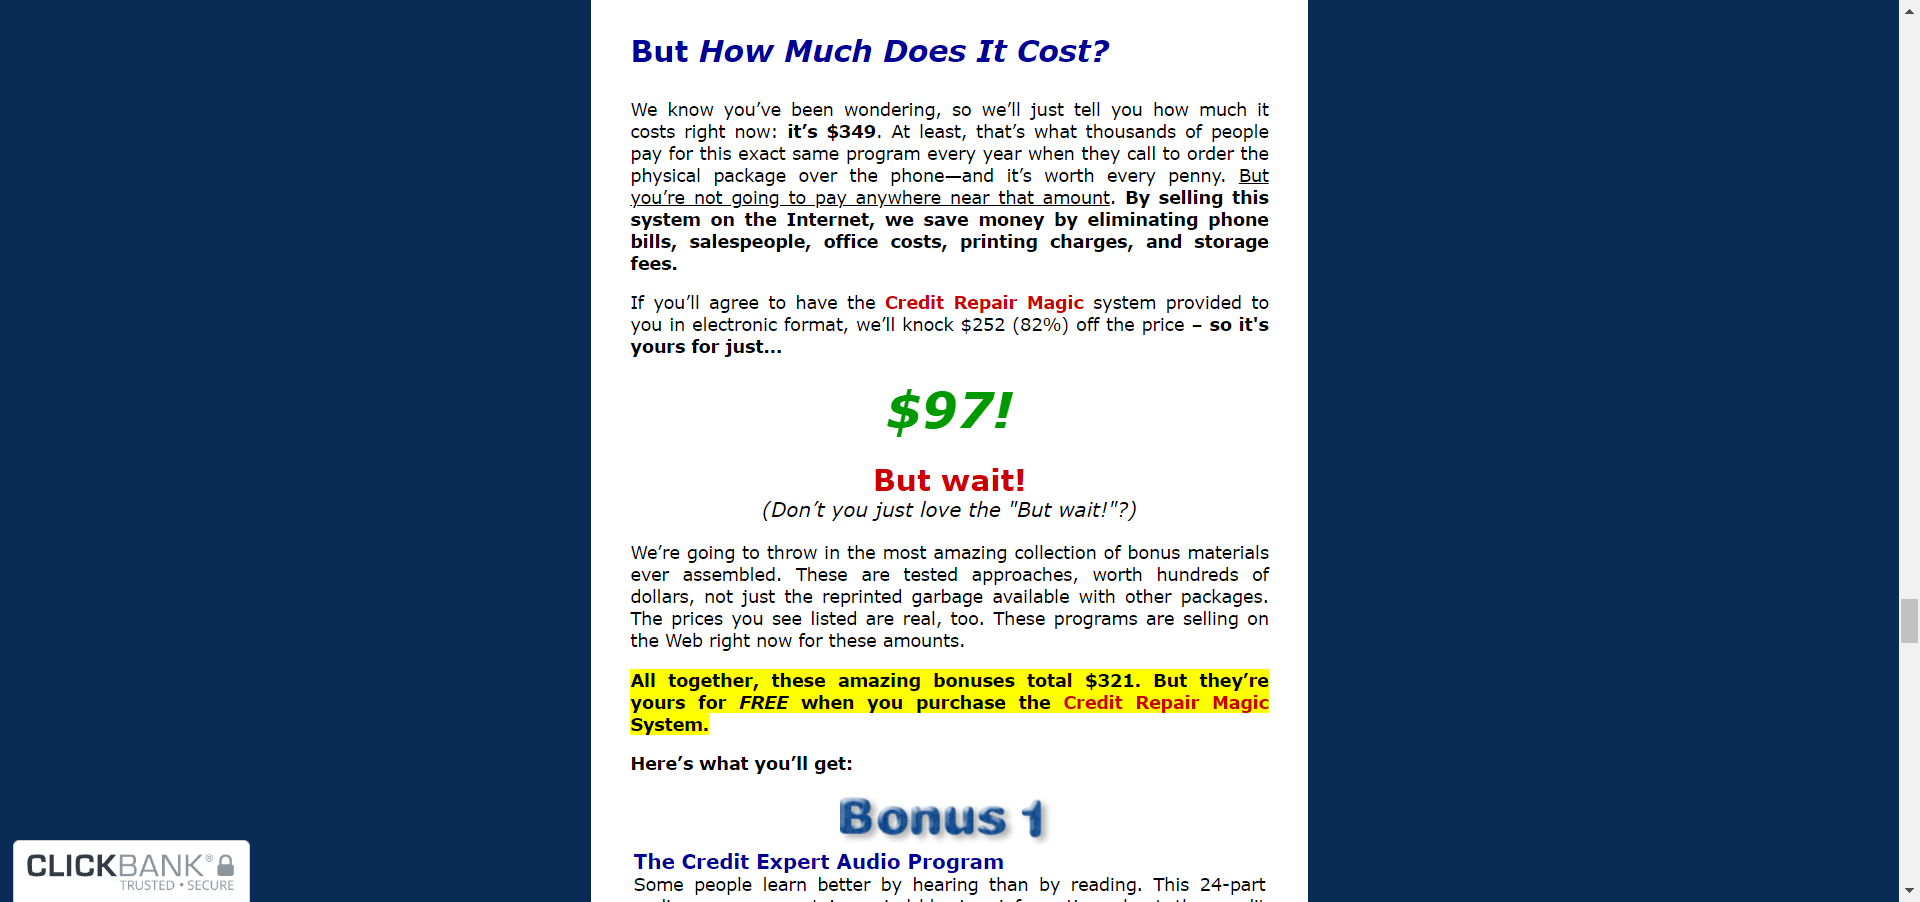 Credit Repair Magic pricing